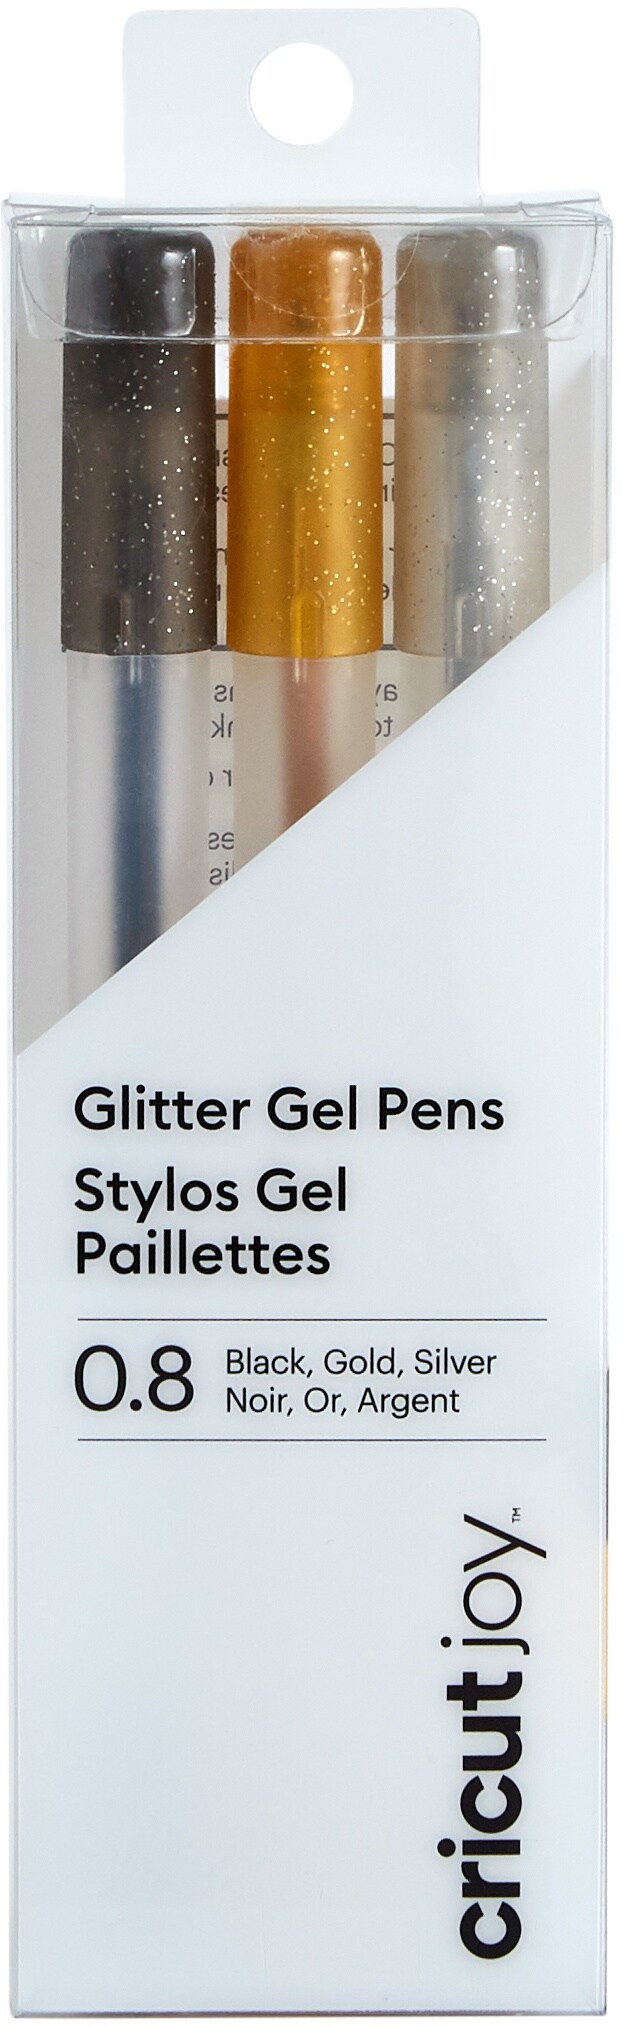  Cricut Joy Glitter Gel Pen Set Black, Gold, Silver